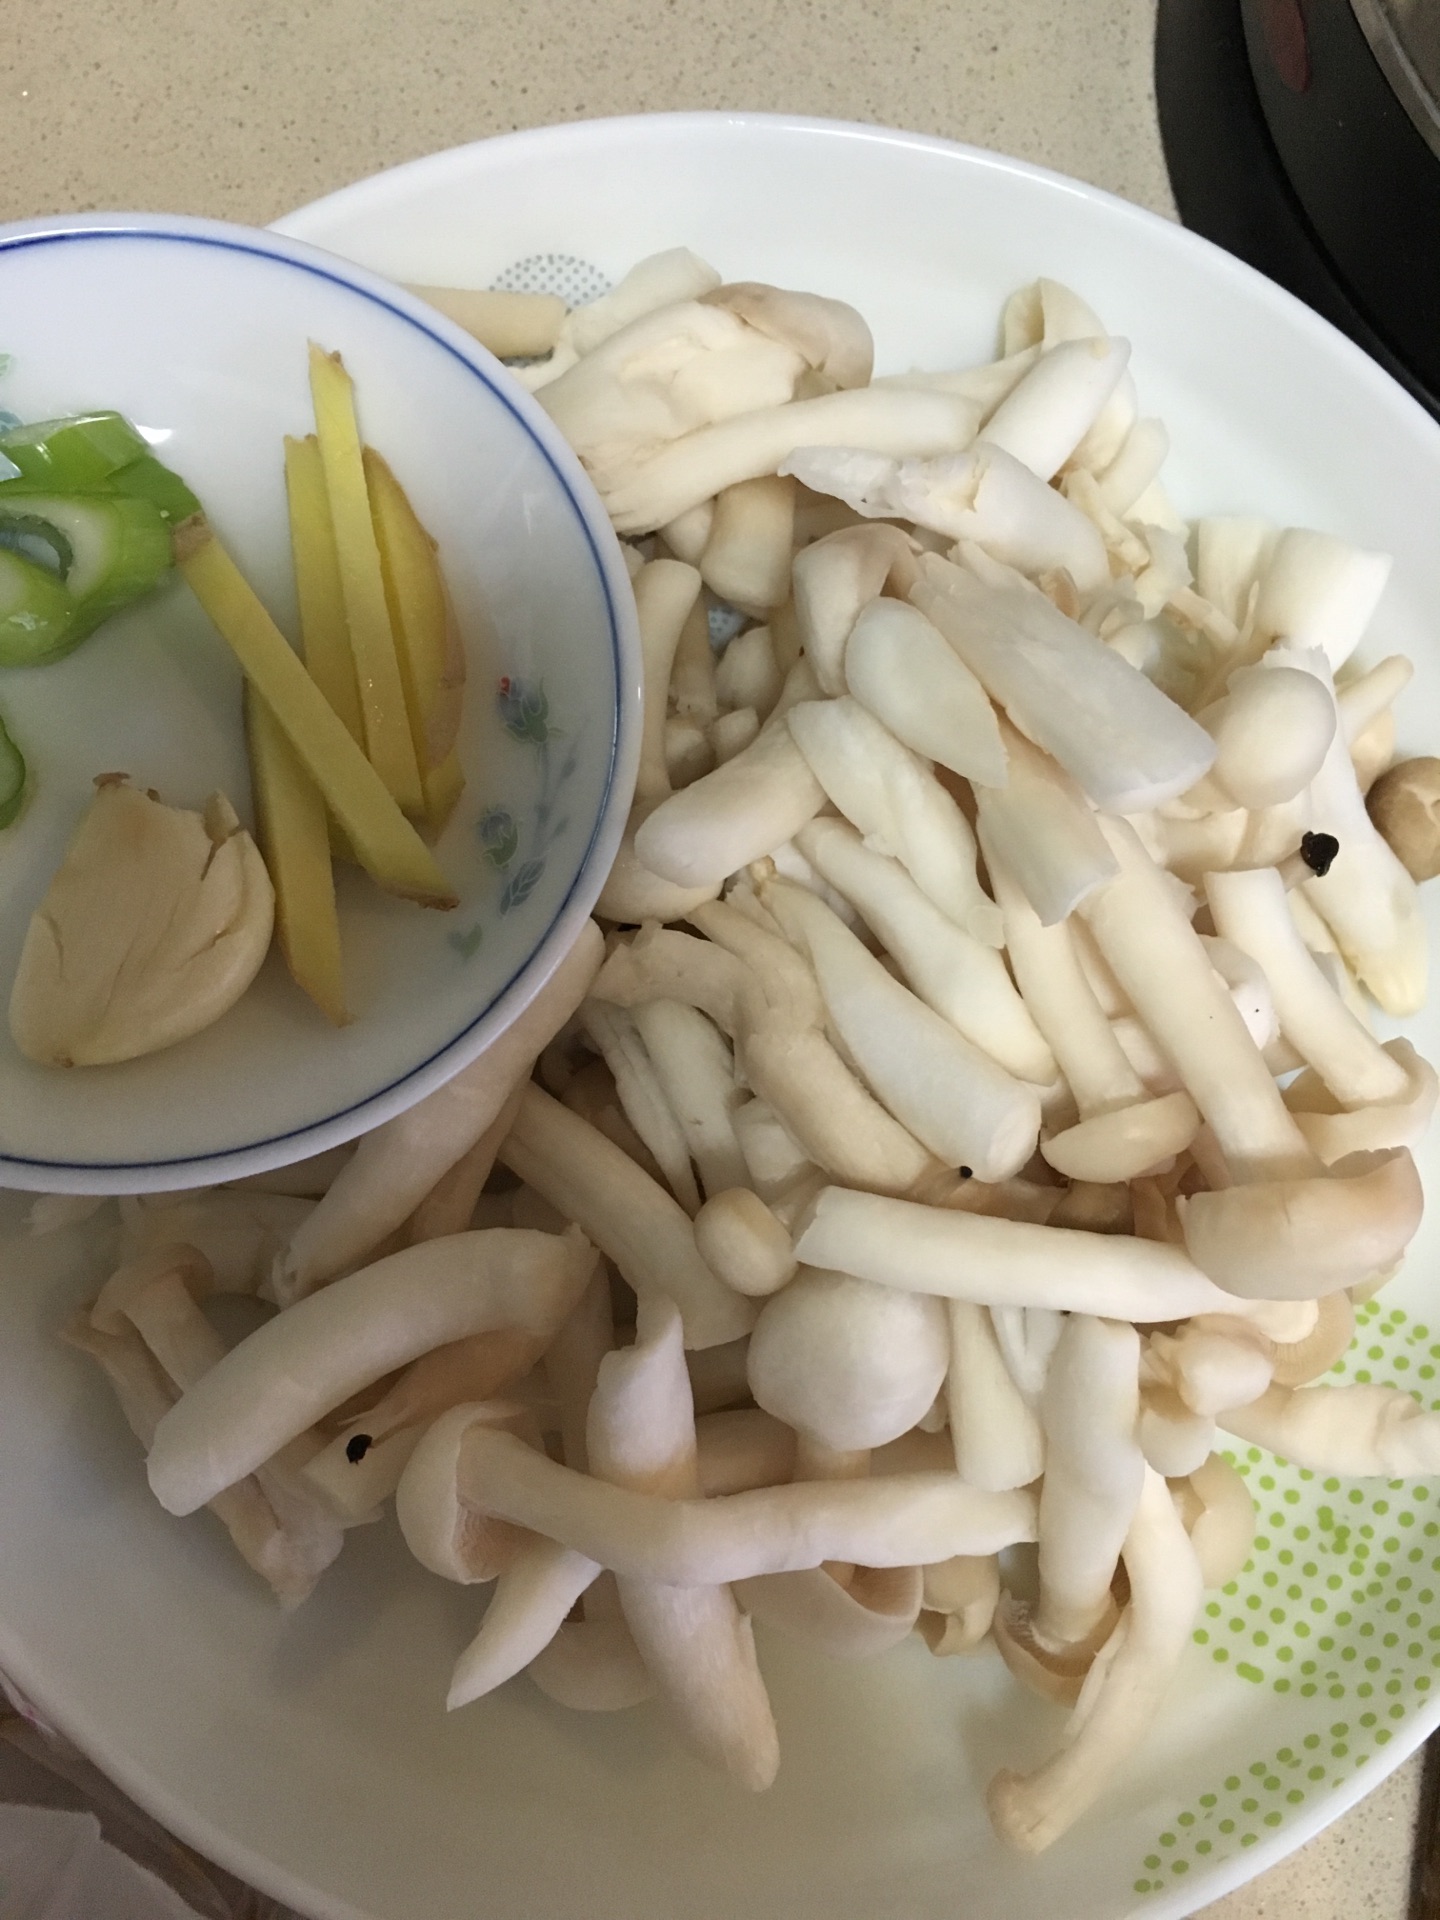 青菜炒蘑菇,青菜炒蘑菇的家常做法 - 美食杰青菜炒蘑菇做法大全